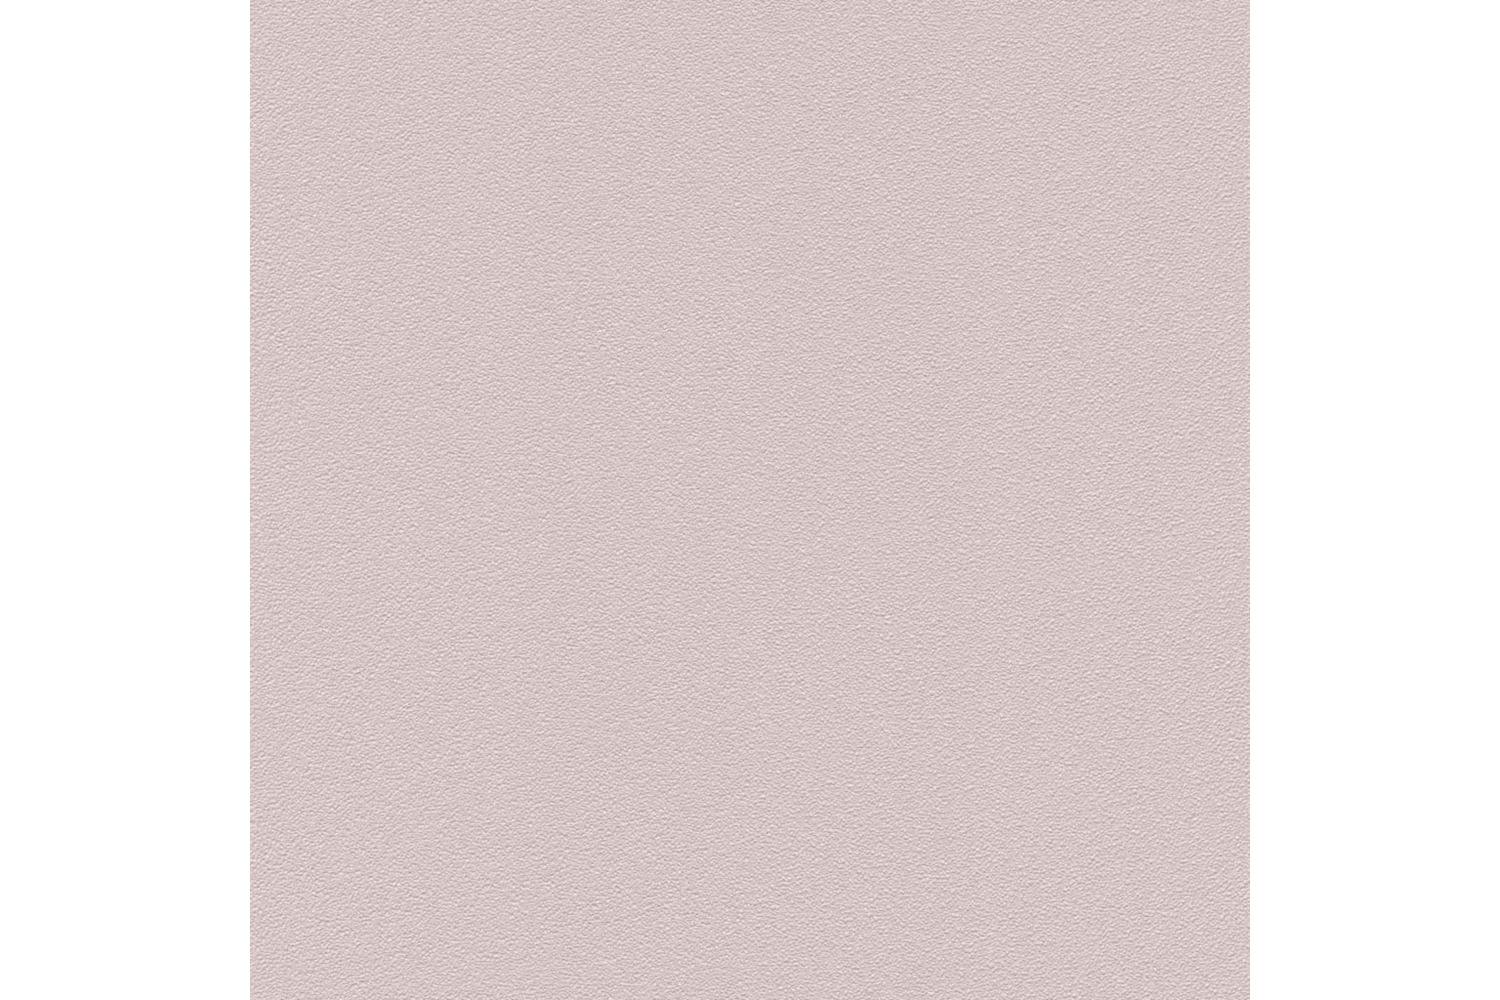 Vidaxl 146203 4 Pcs Non-woven Wallpaper Rolls Plain Shimmer Pink 0.53x10 M